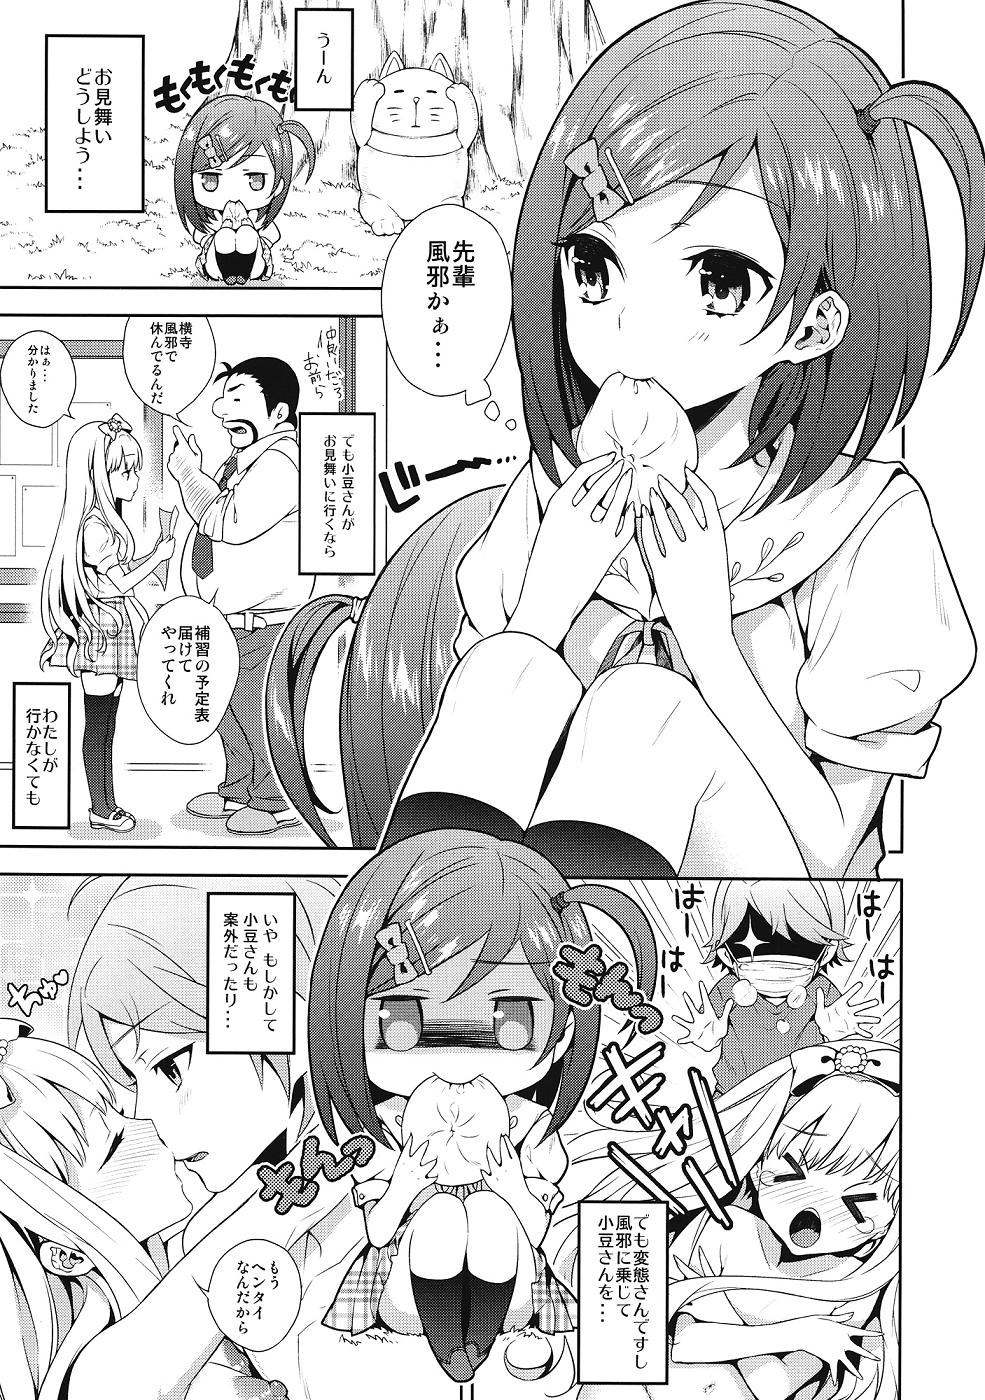 Clothed Hentai Ouji ni Okasareta Neko. - Hentai ouji to warawanai neko Gay Outdoors - Page 2